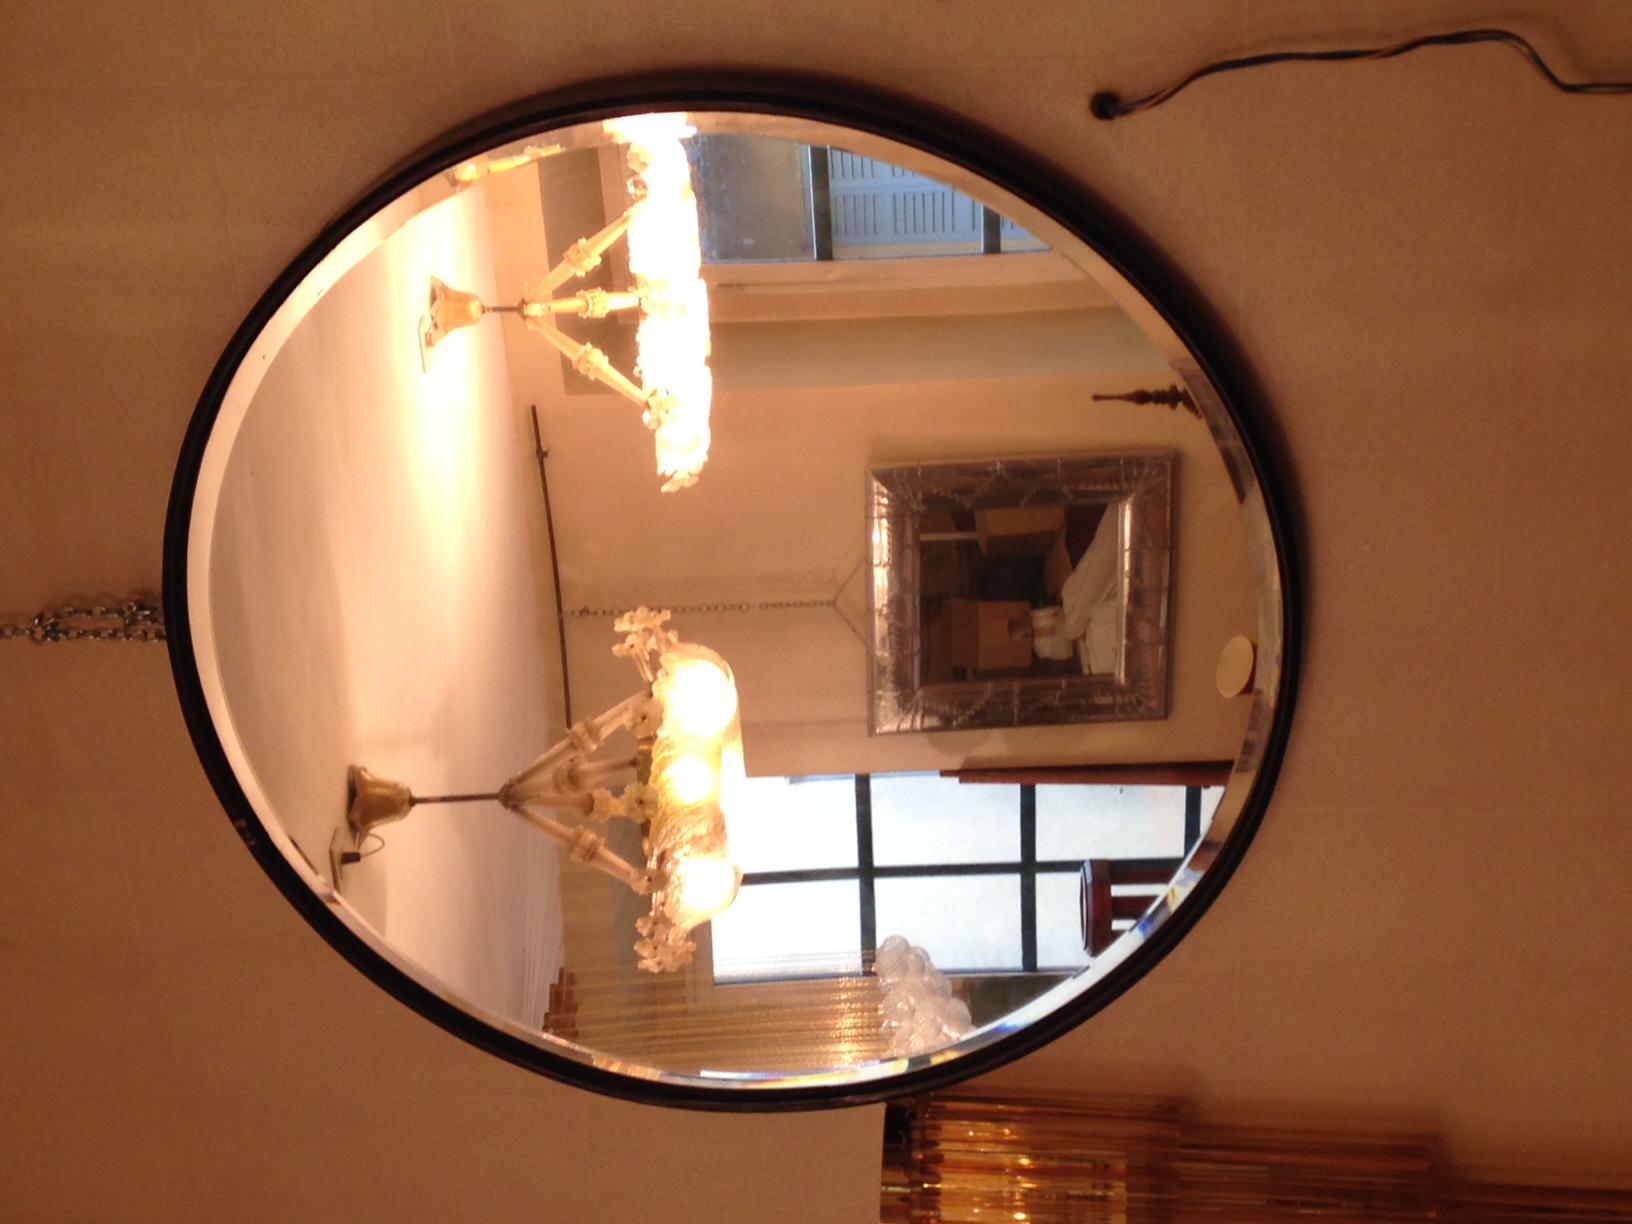 Specchio con Design Cornice nera tondo del XX Secolo Pezzo di storia autentico - Robertaebasta® Art Gallery opere d’arte esclusive.